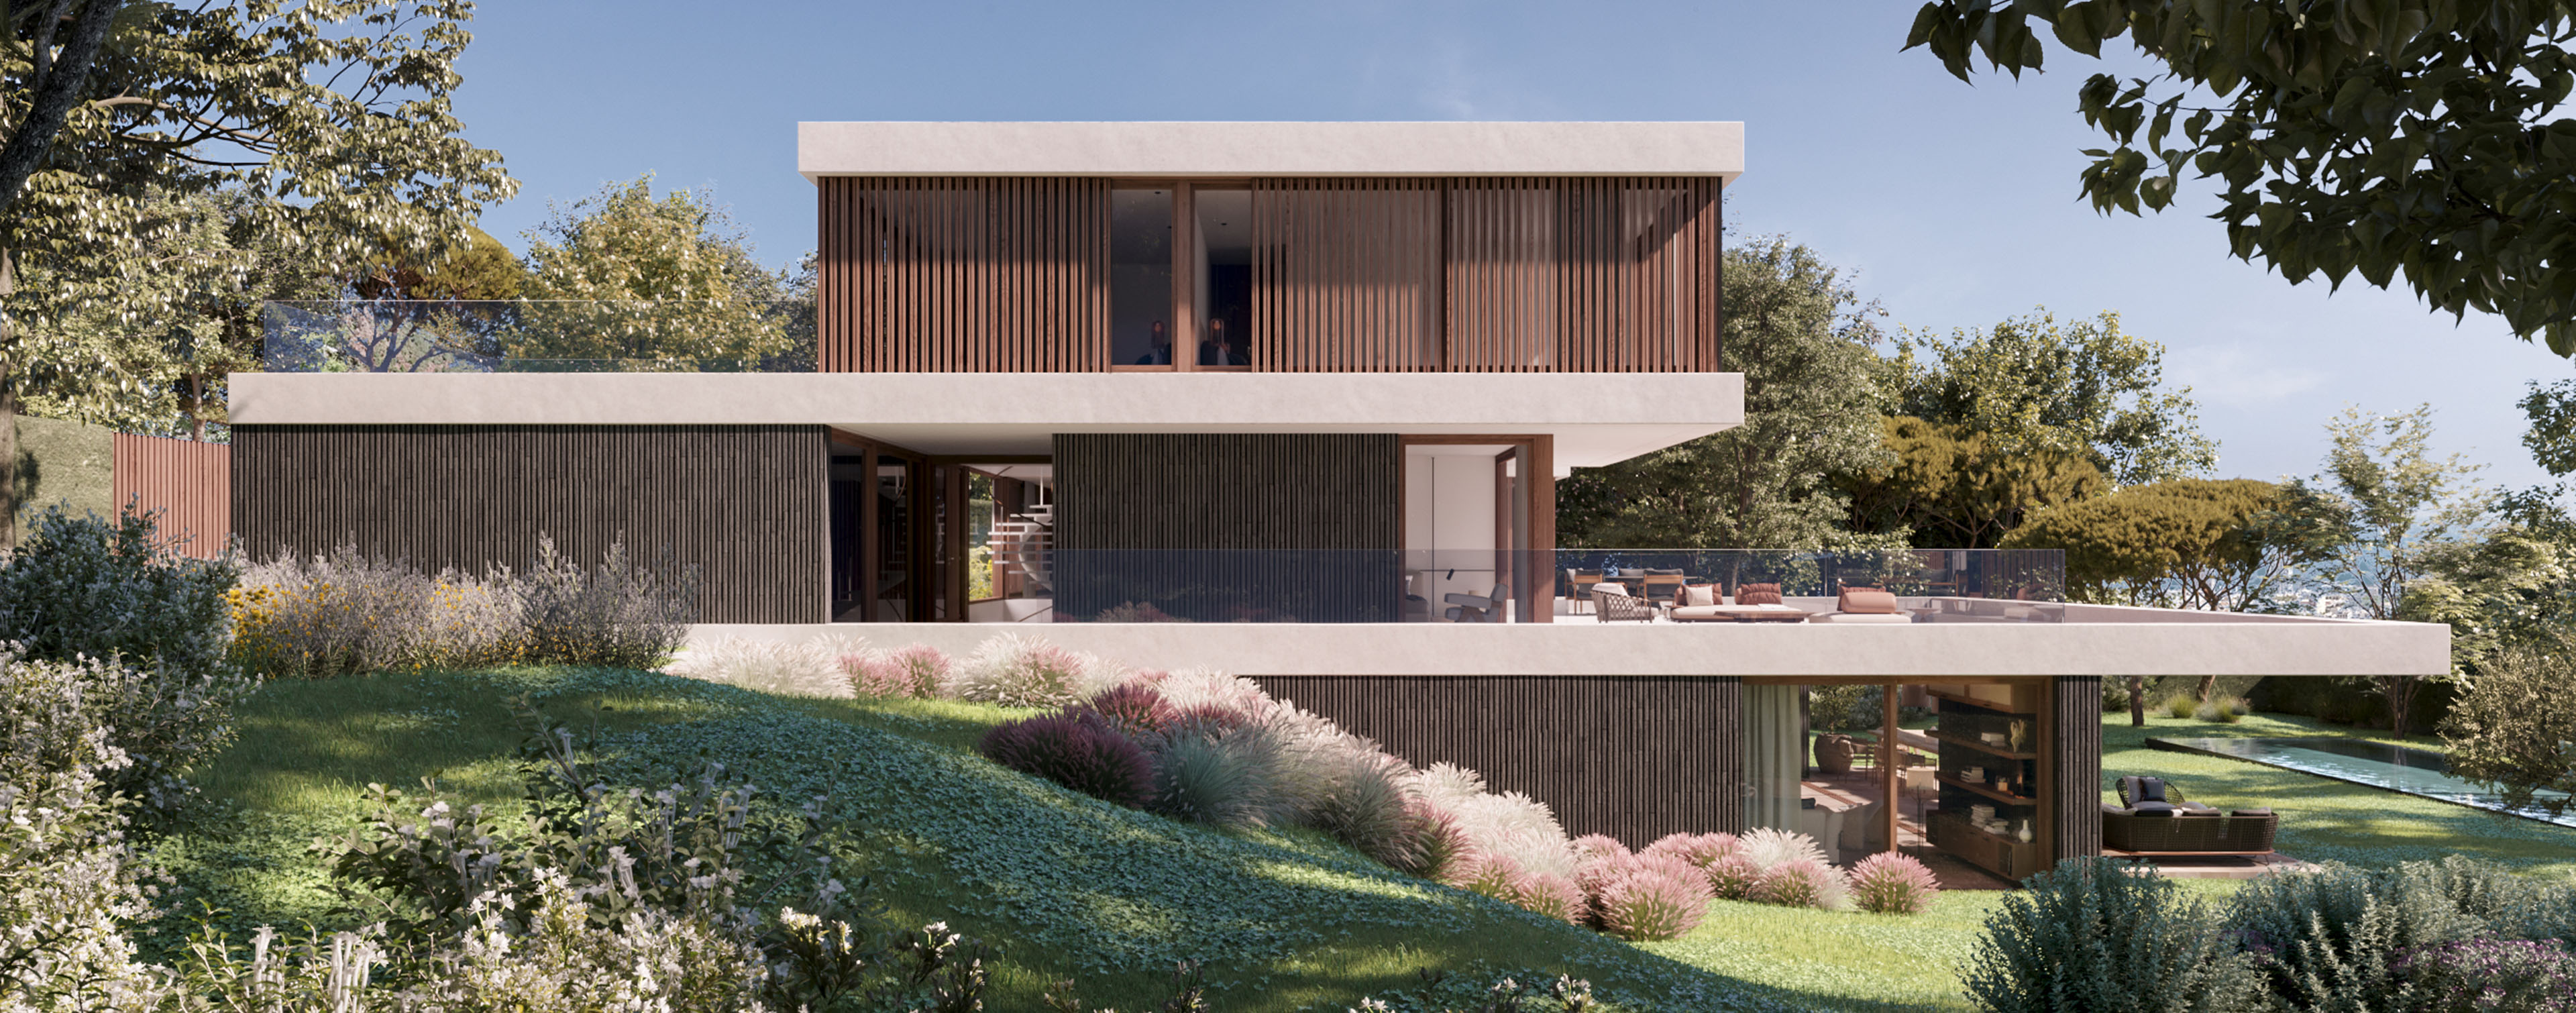 luv studio luxury architects barcelona pearson k villa IMG 01 - LUV Studio - Architecture et design - Barcelone